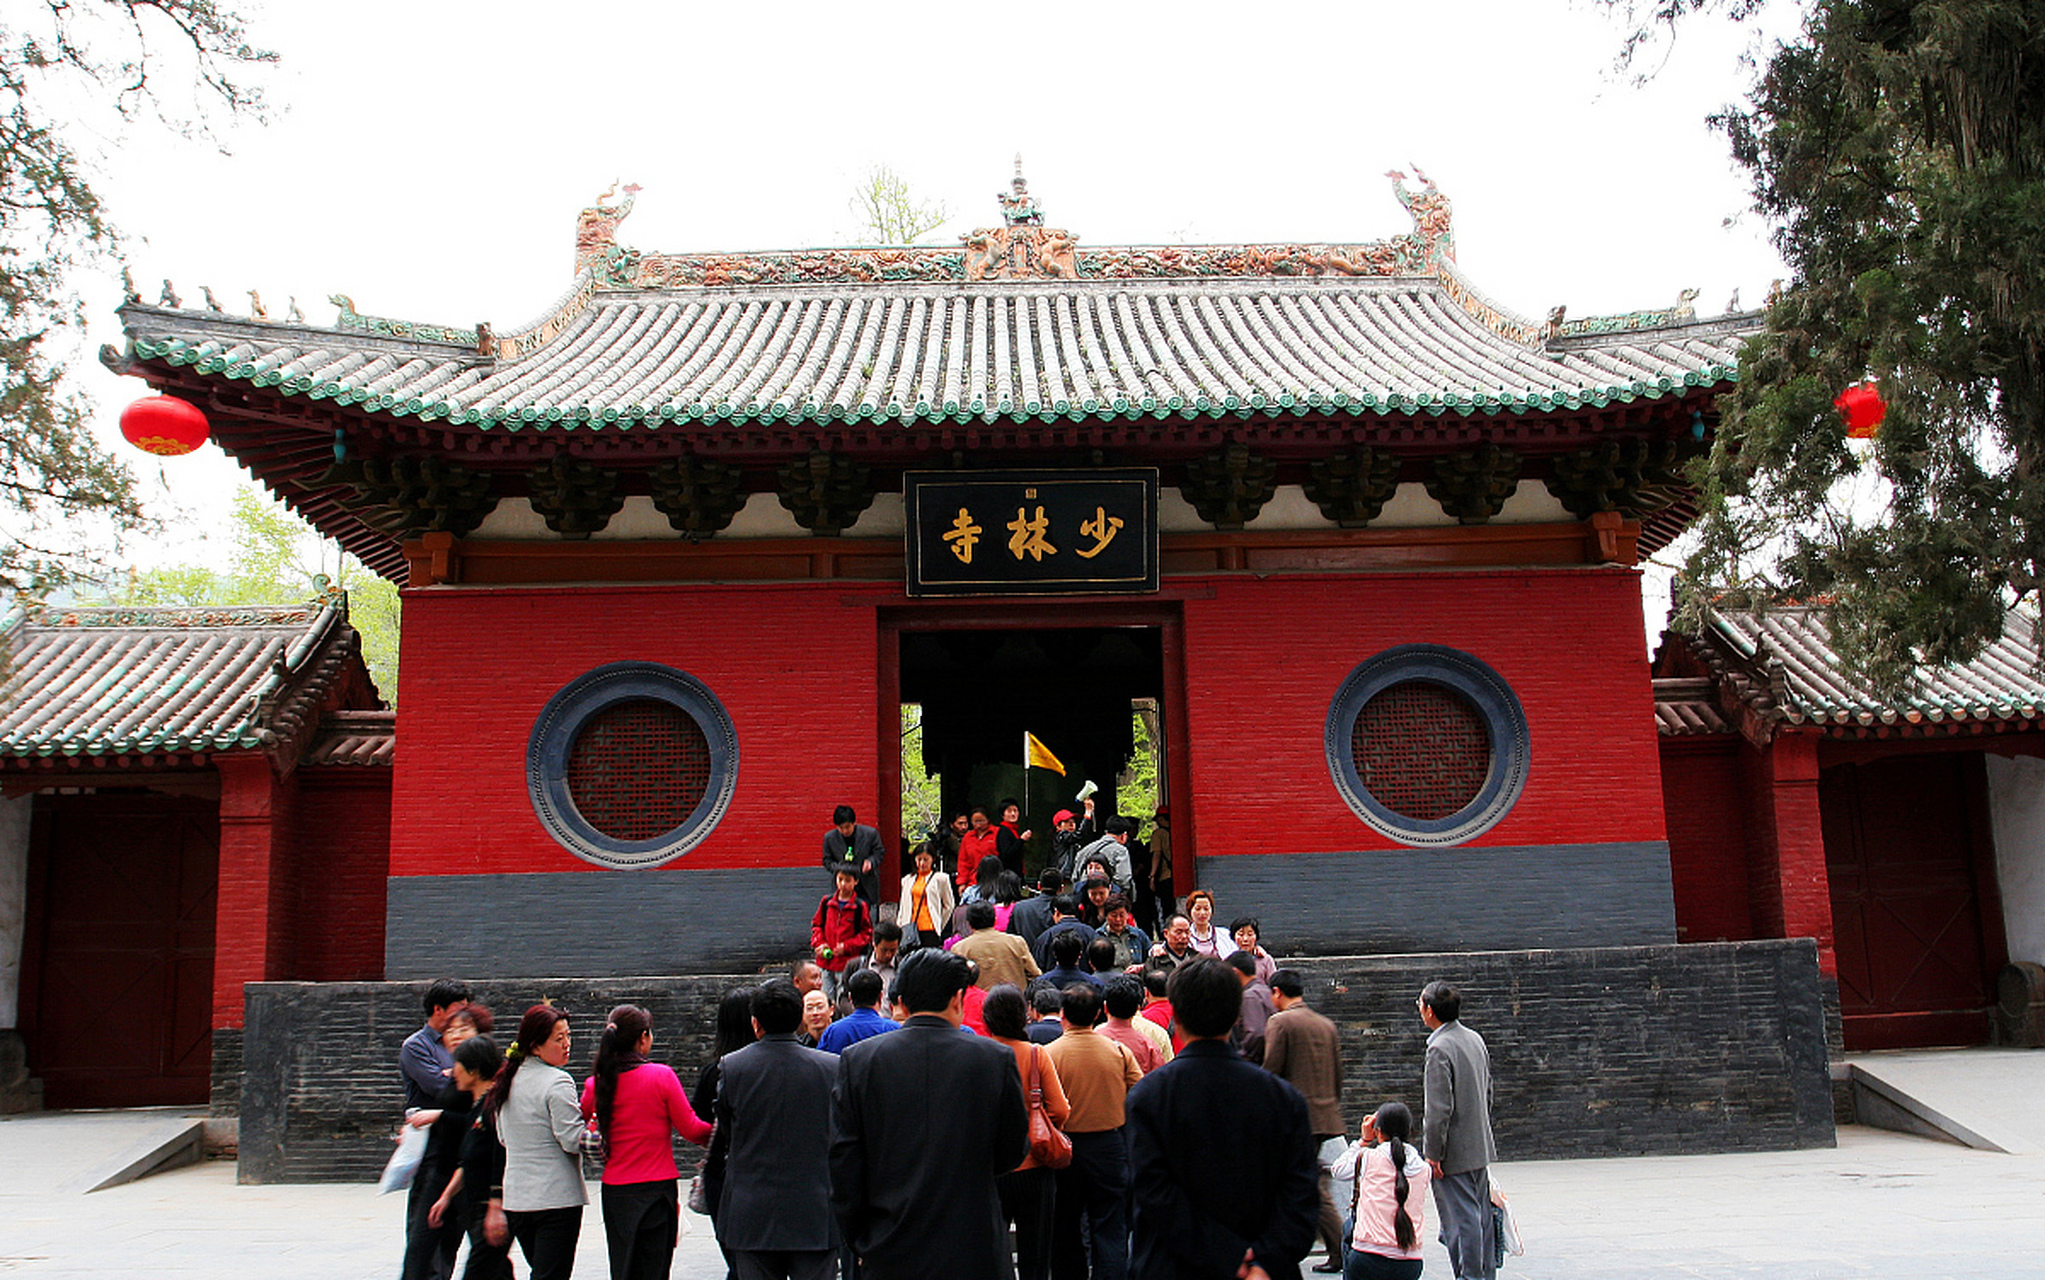 少林寺,位于河南省郑州市,是中国著名的佛教圣地,拥有着悠久的历史